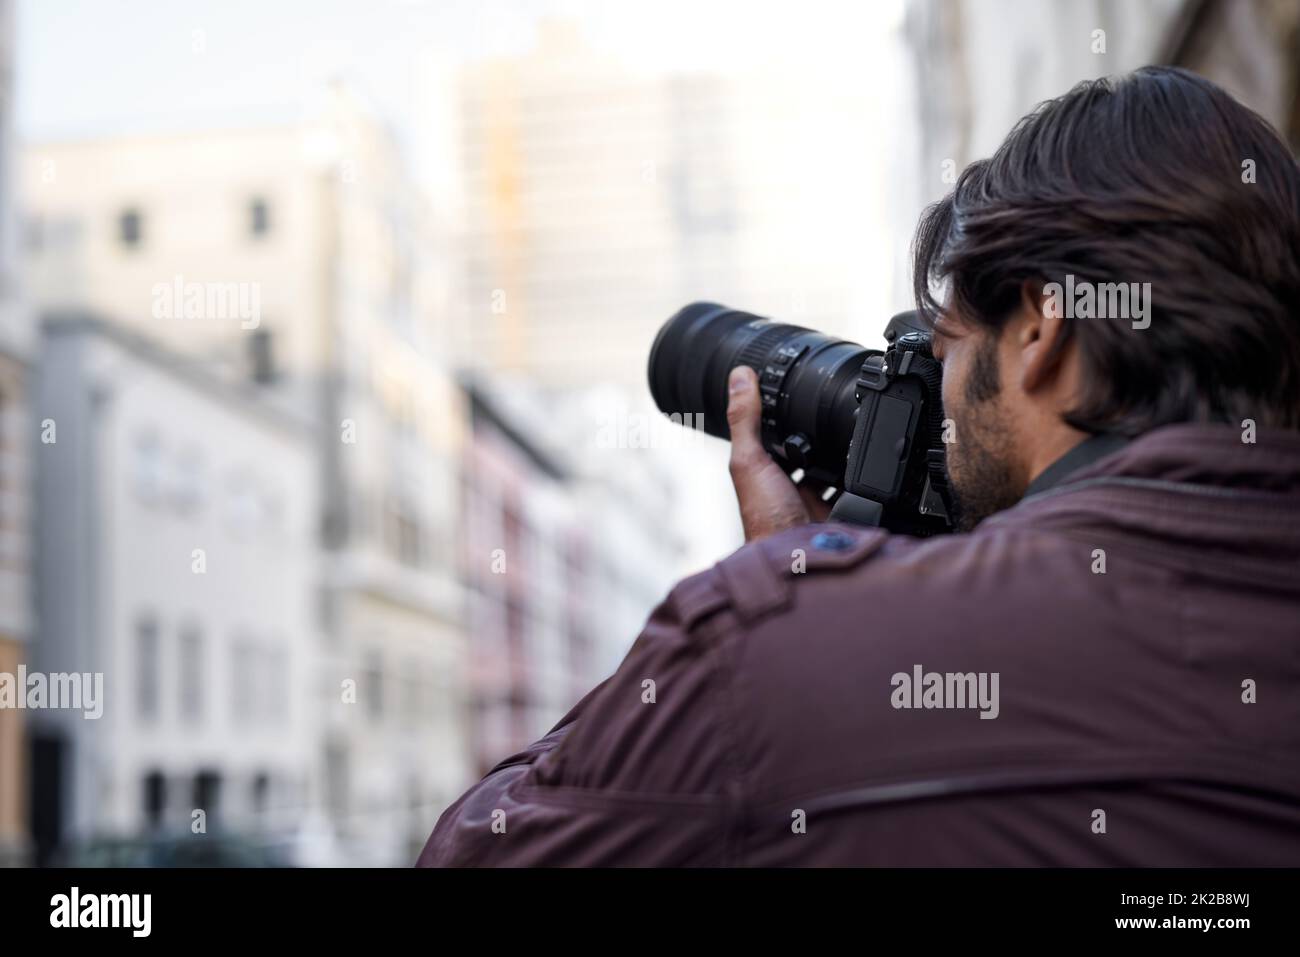 Capturer la beauté qui l'entoure. Un jeune homme prenant une photo avec son appareil photo. Banque D'Images